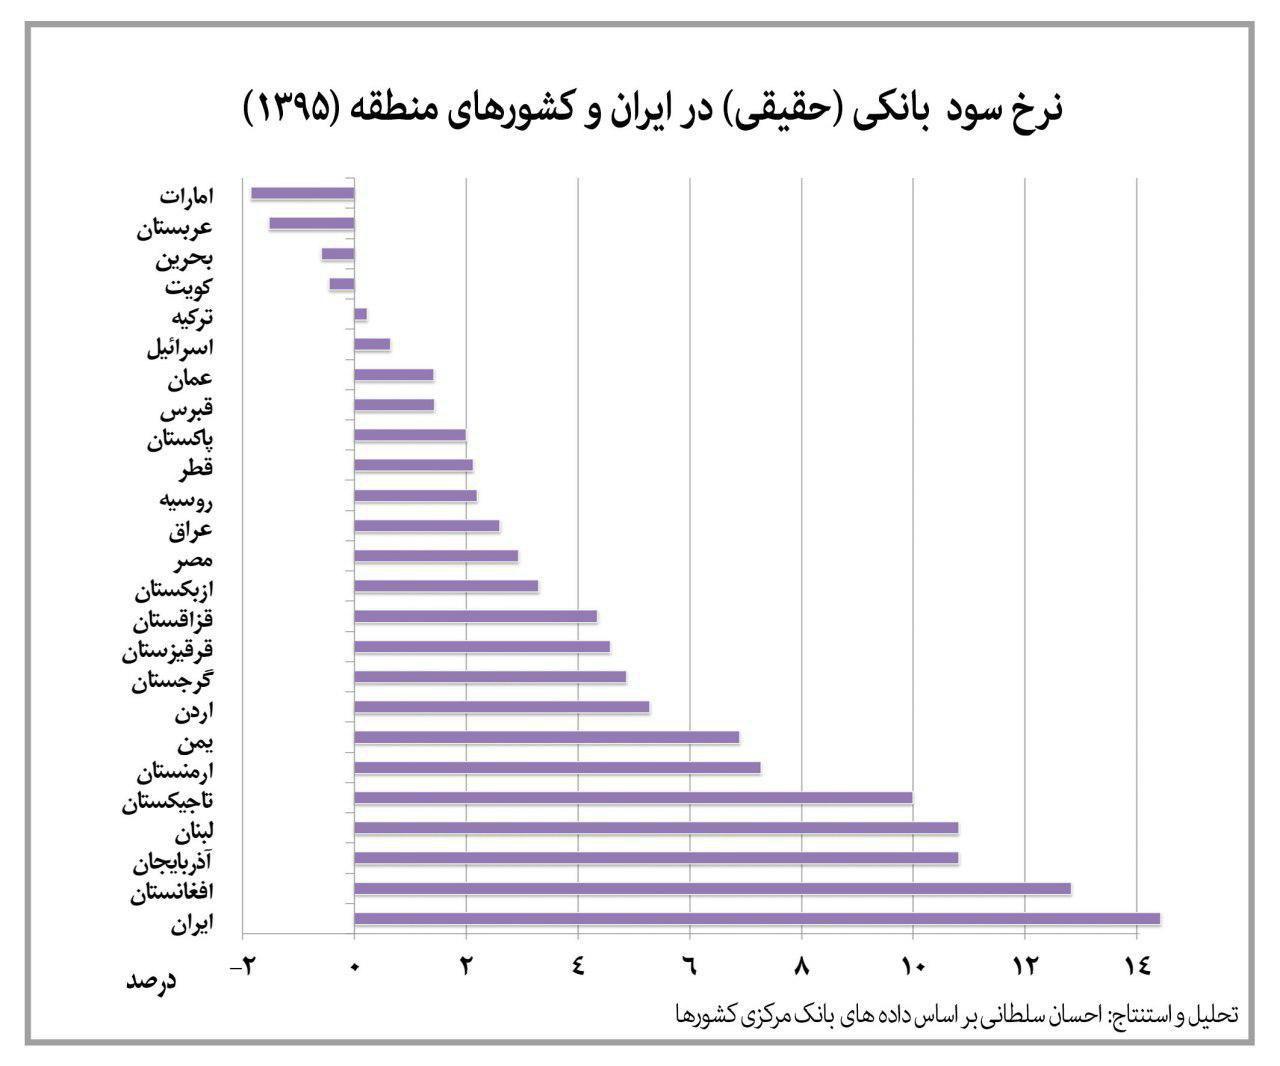 مقایسه ای جالب از نرخ سود بانکی ایران و دیگر کشورها